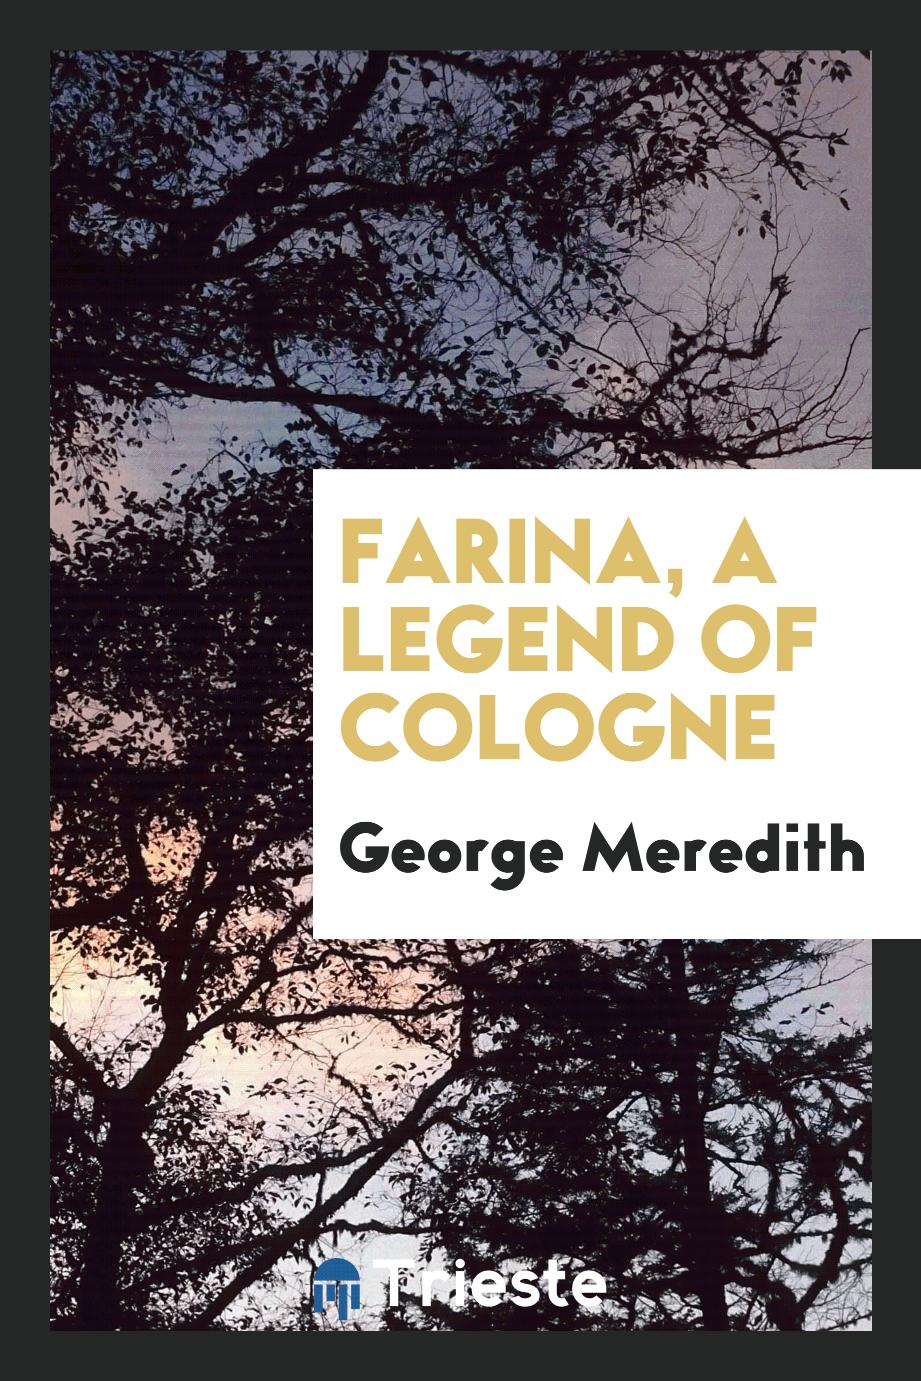 Farina, a legend of Cologne